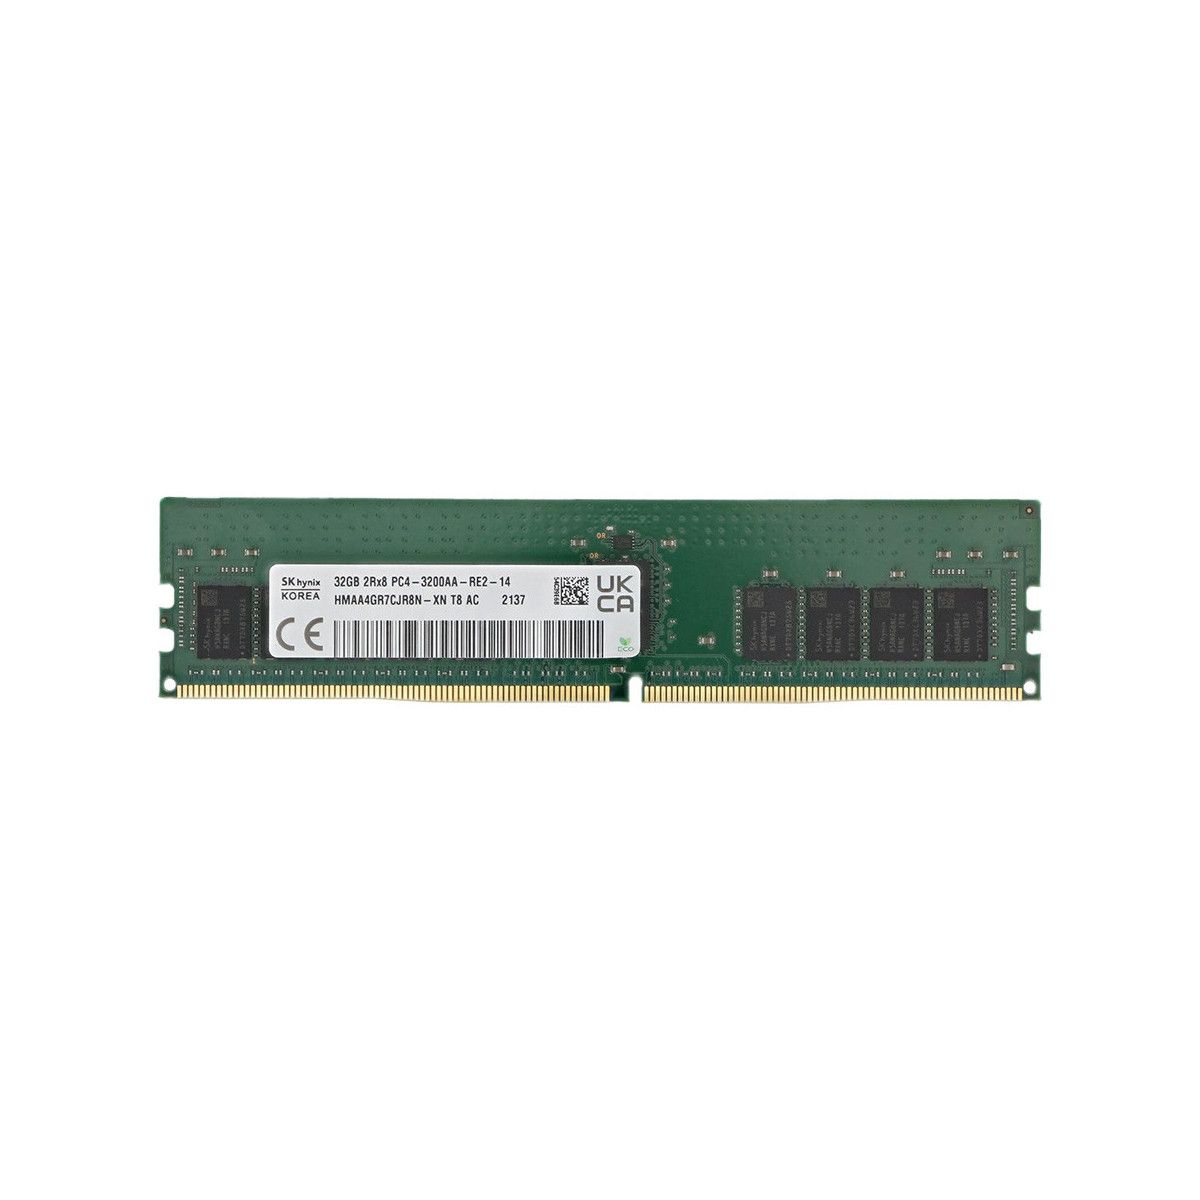 P43022-B21-MS - Memstar 1x 32GB DDR4-3200 UDIMM PC4-25600U - Mem-star Kompatibel OEM Speichermedien 1 - Memstar 